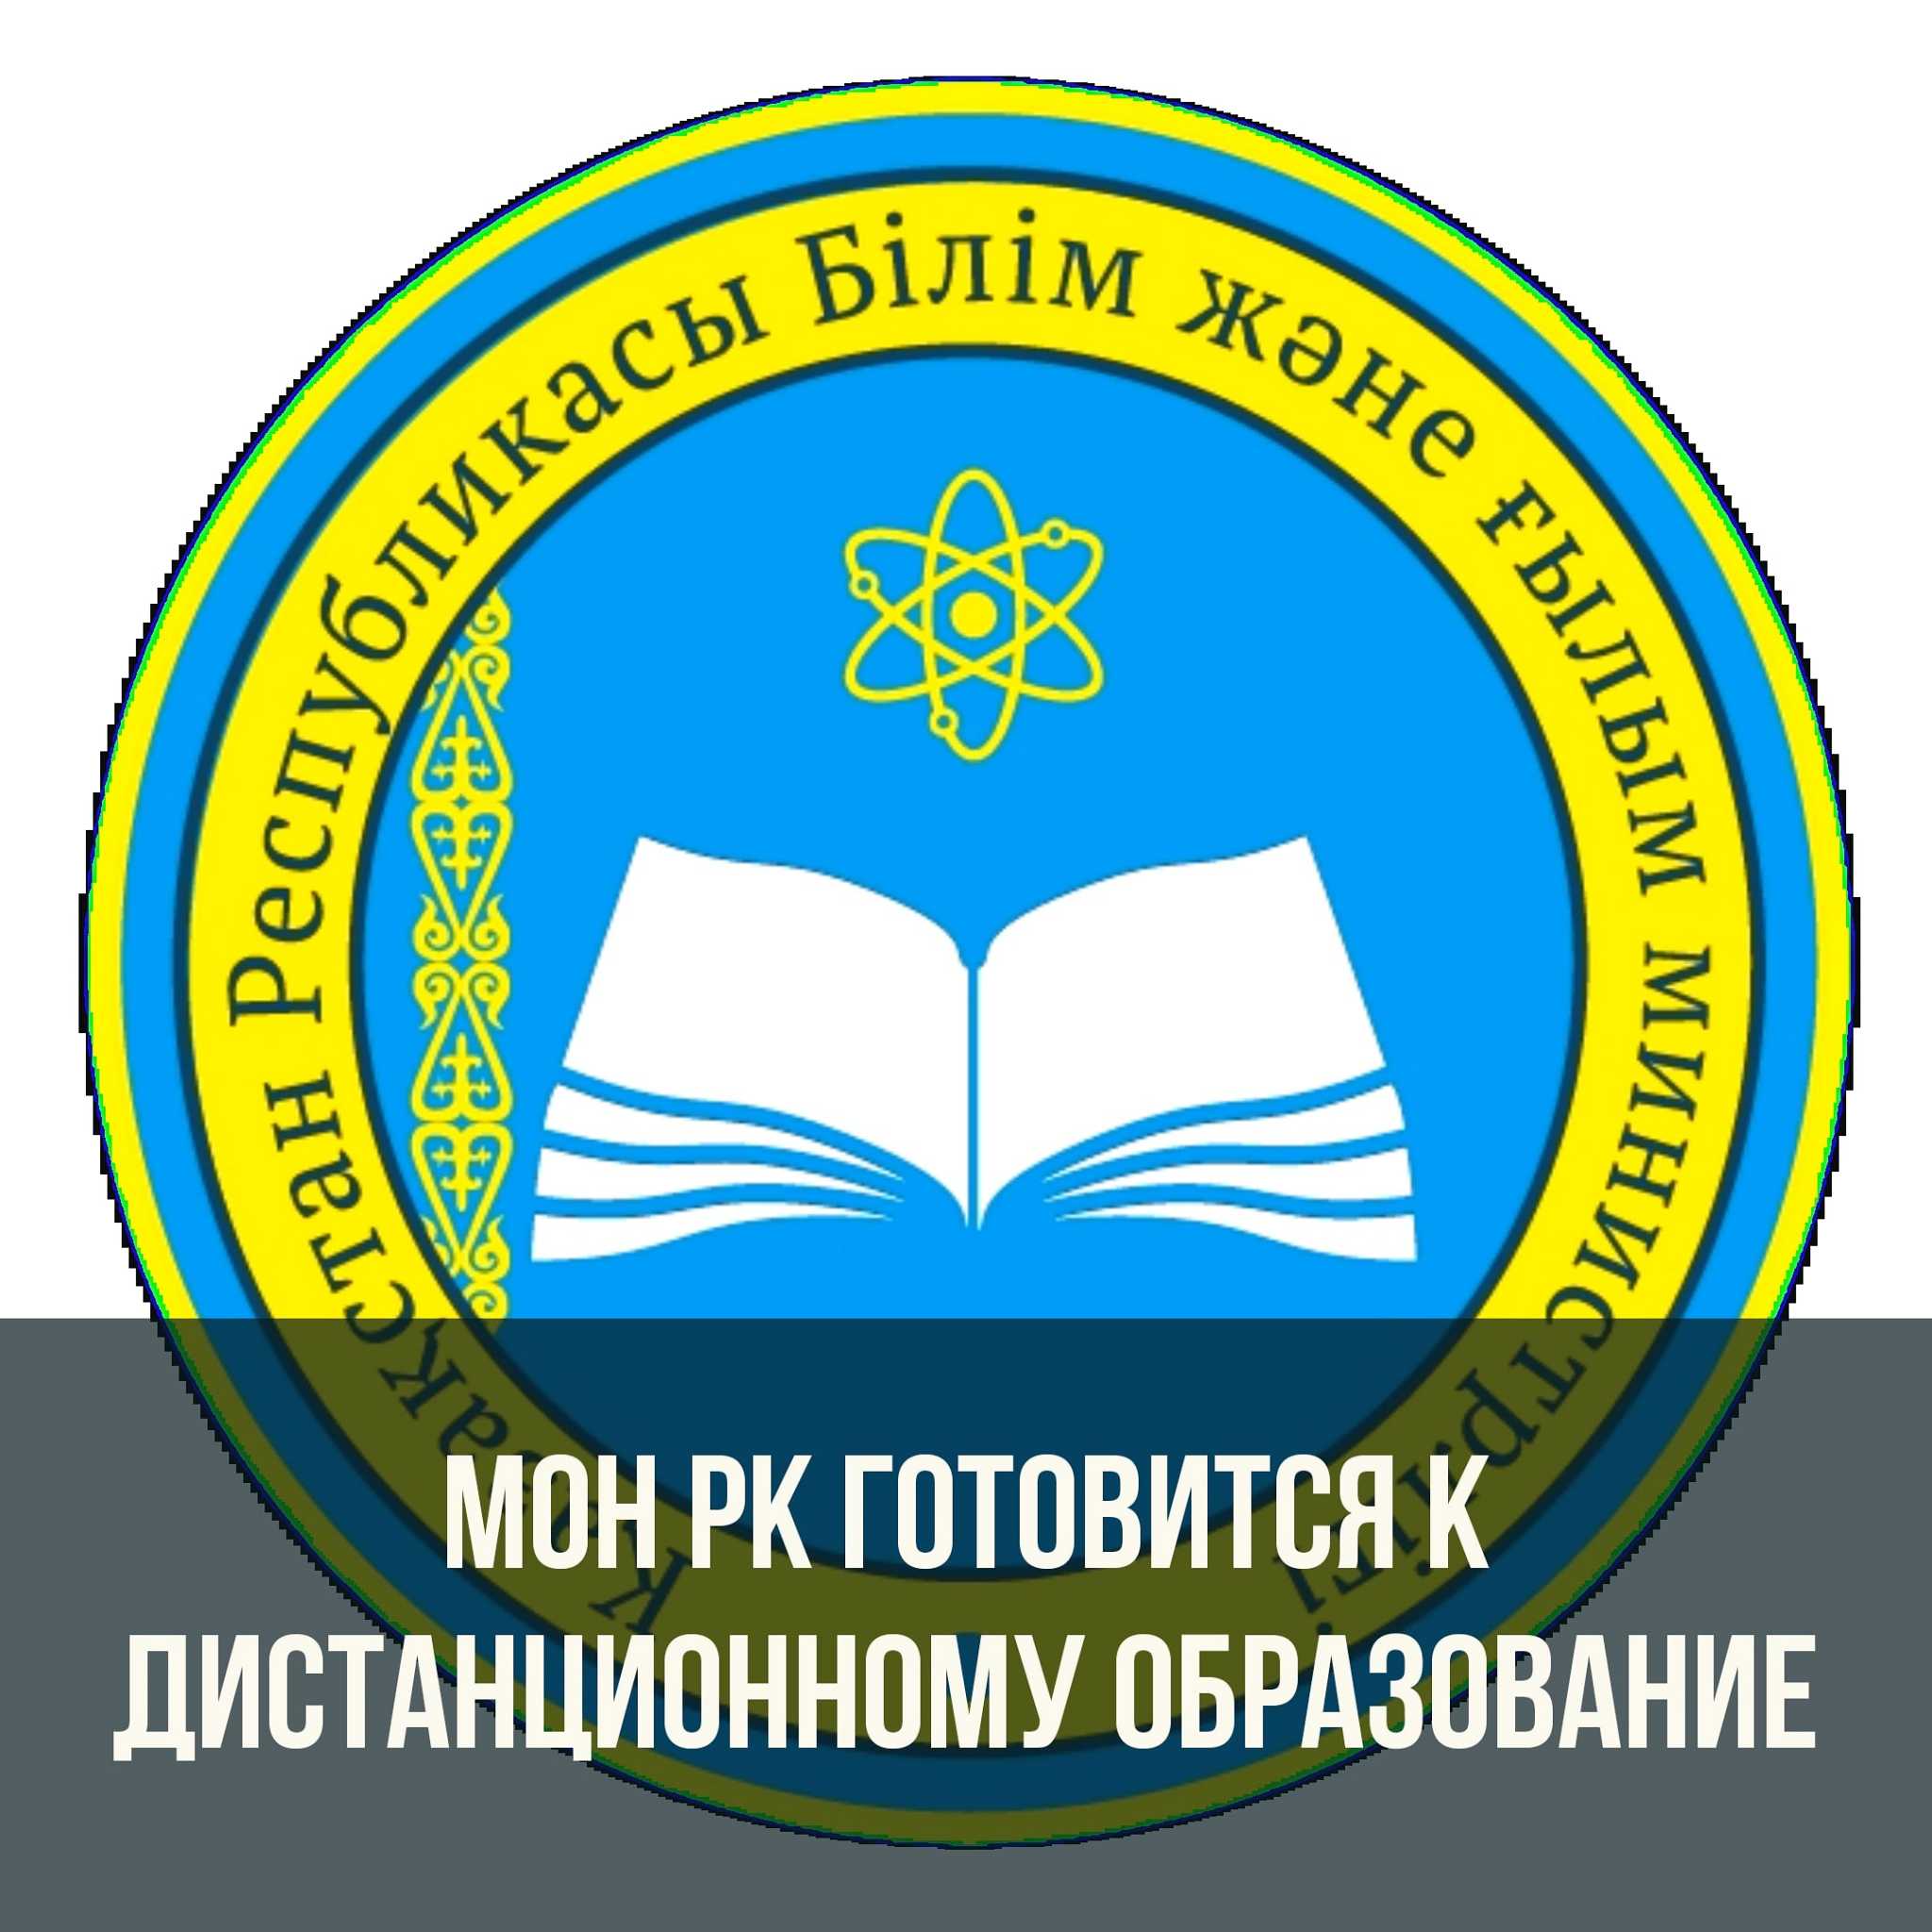 Министерство образования Казахстана готовиться к дистанционному обучению? Как же будем учиться в 2020-2021 учебном году во время карантина